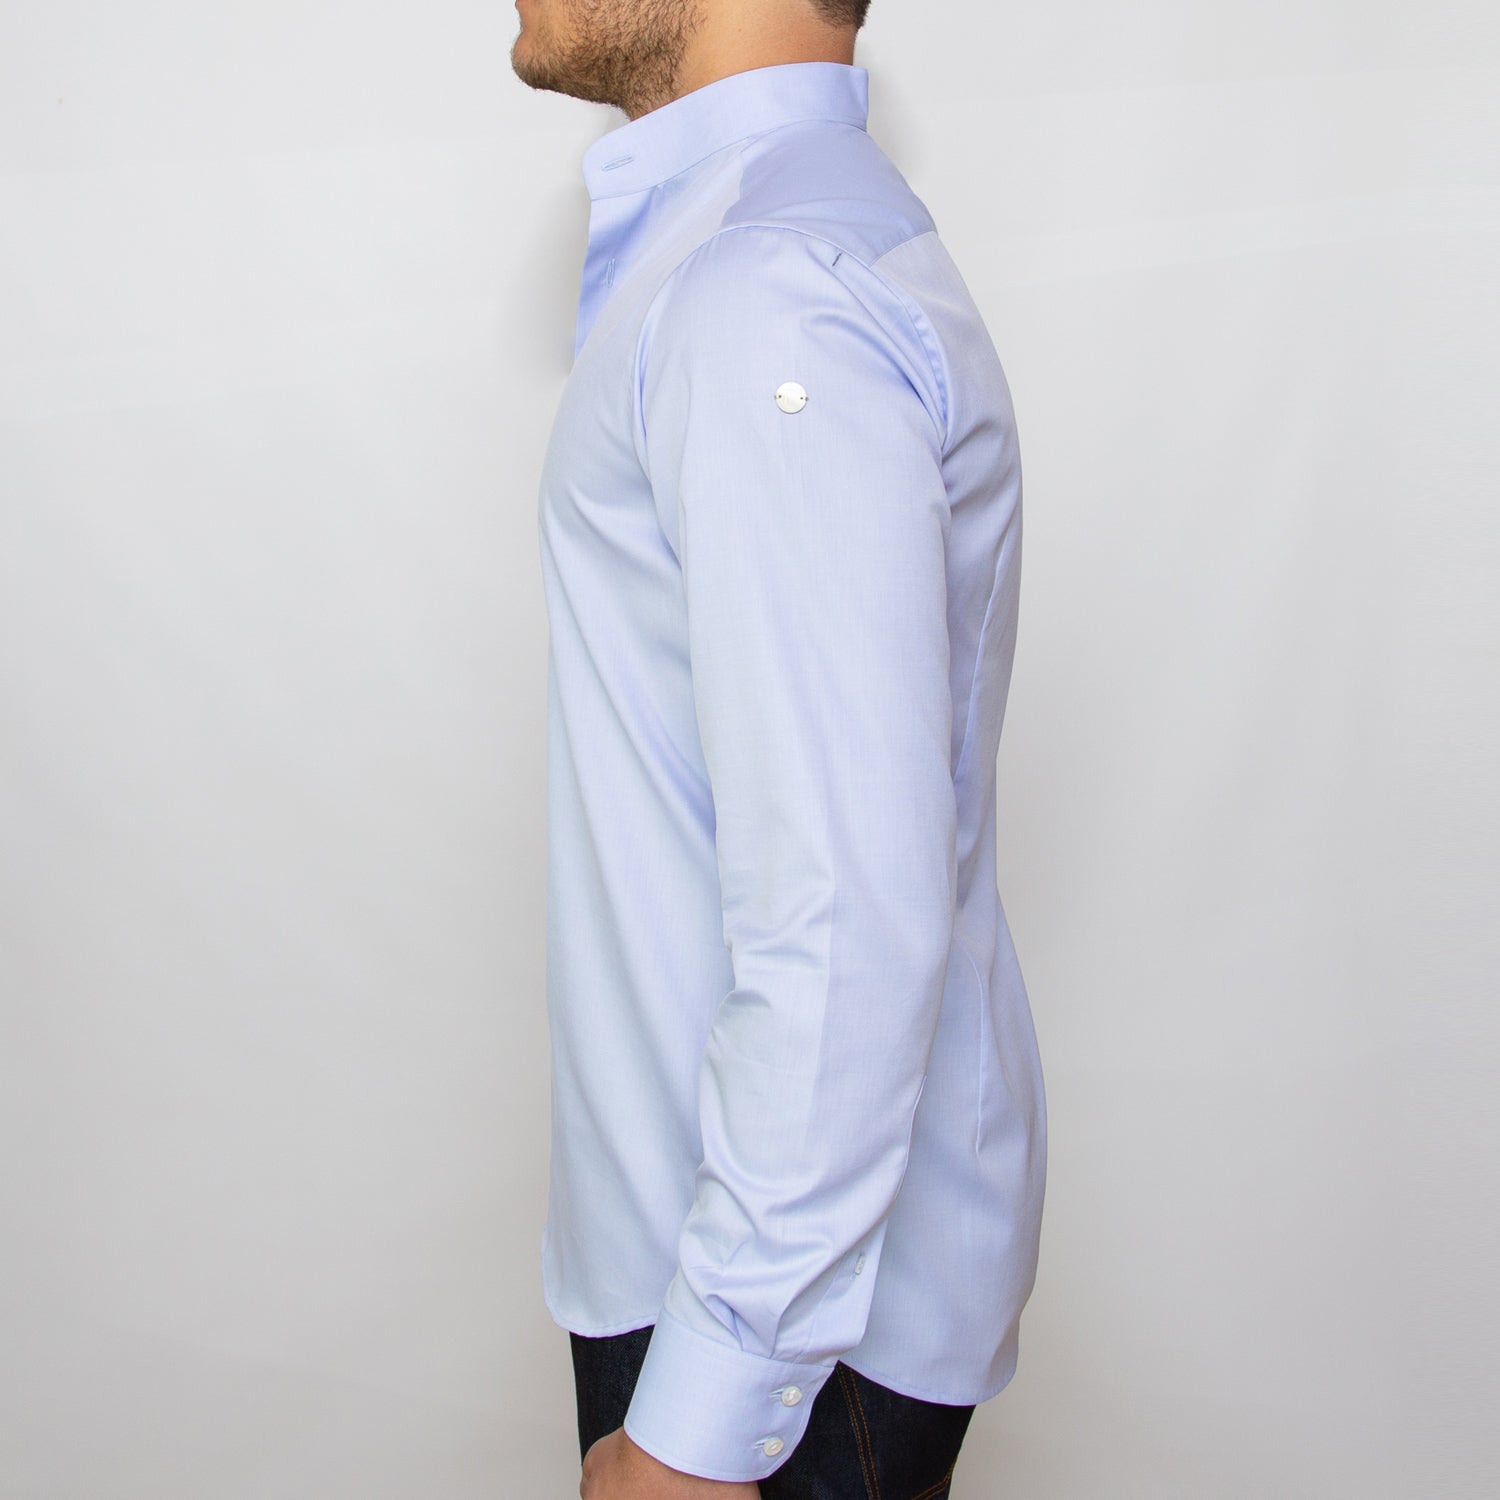 DARIO’S Couture Stand-up collar Men’s Shirt Hamburg in 140/2, Lightblue